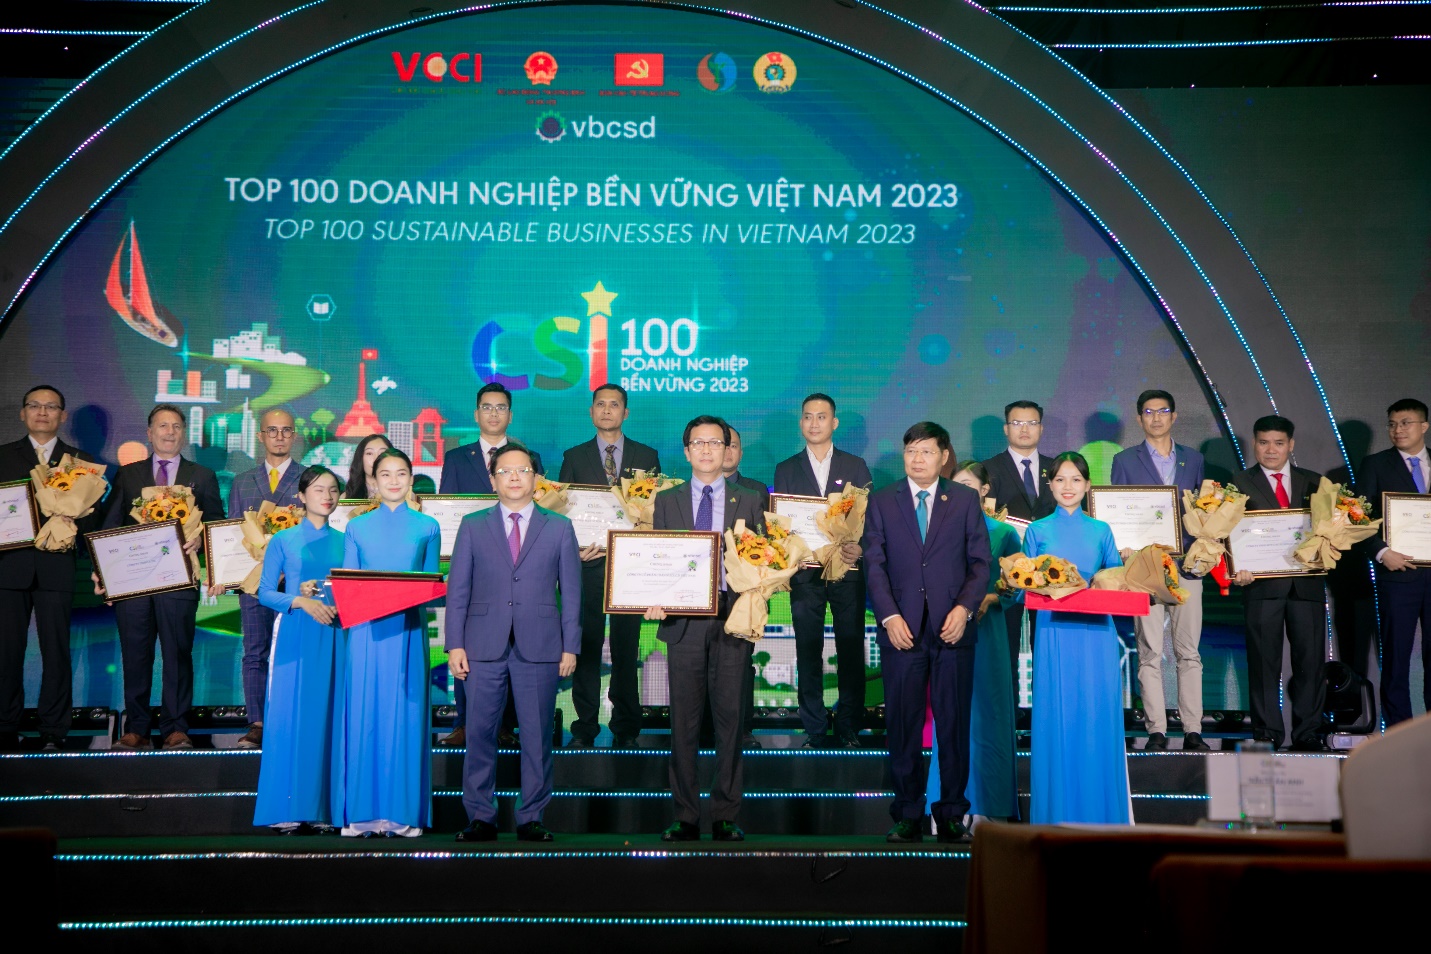 C.P. VIỆT NAM: TOP 100 doanh nghiệp bền vững trong lĩnh vực sản xuất năm 2023 - Ảnh 2.